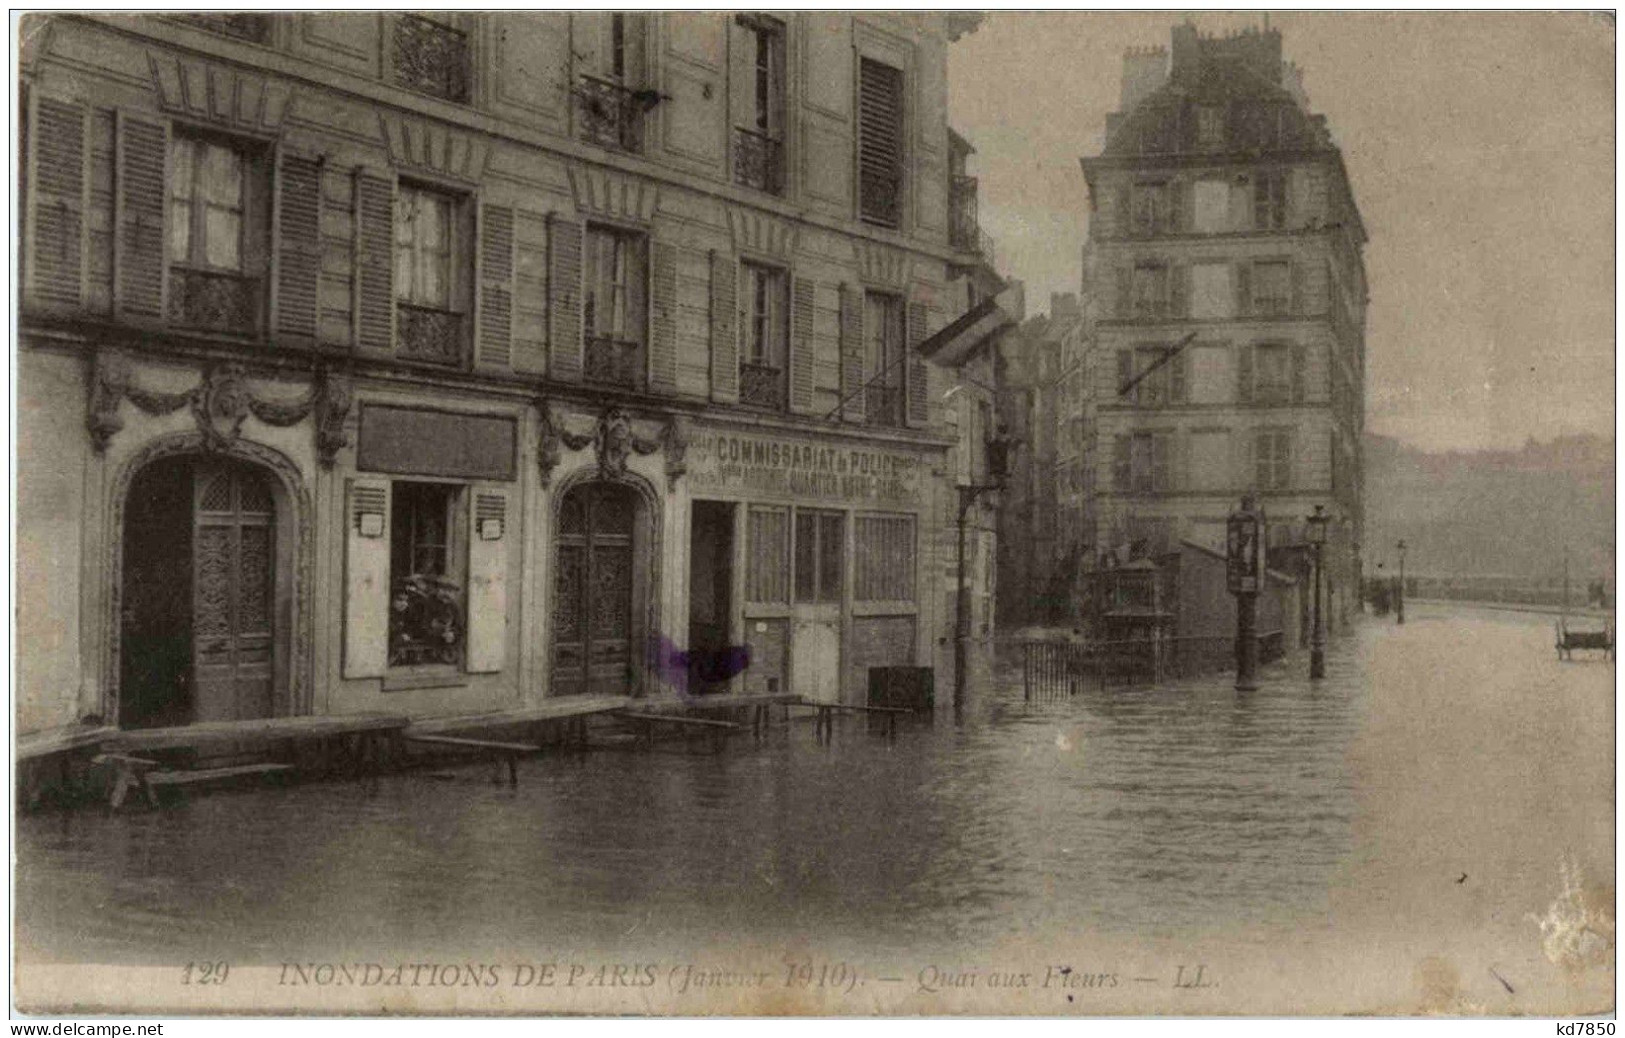 Paris - Inondations 1910 - Paris Flood, 1910